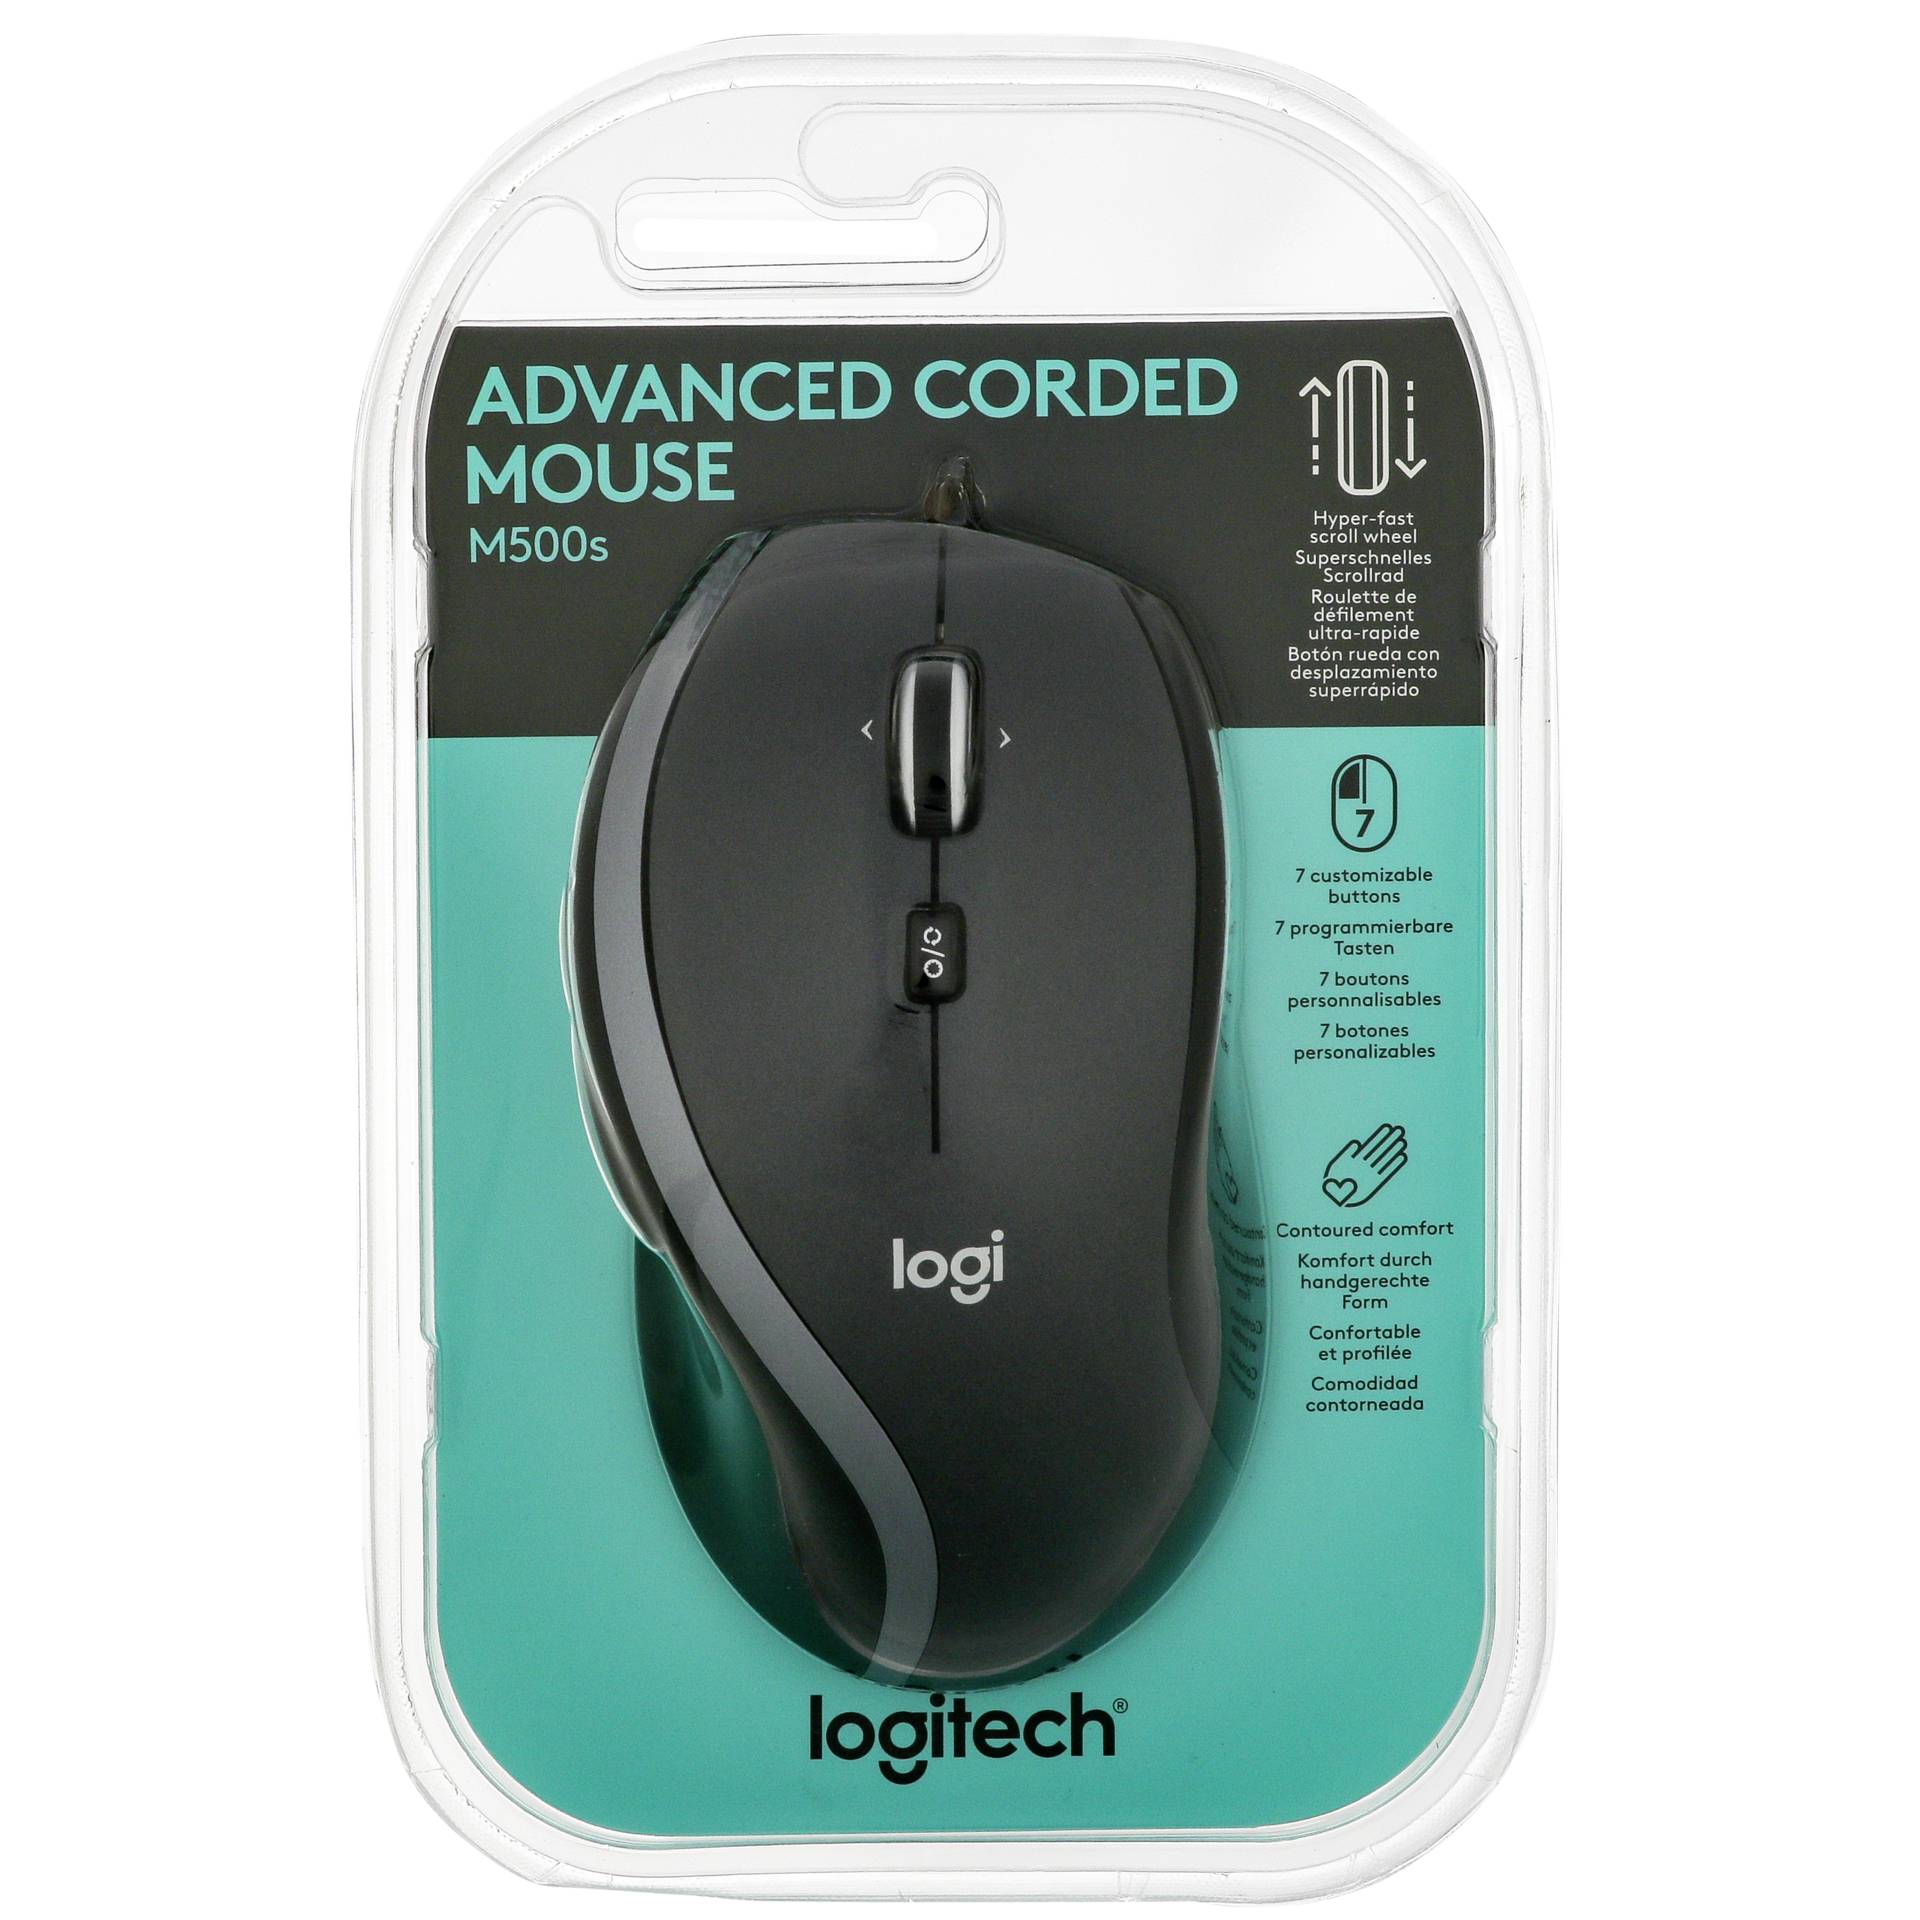 Logitech M500s Advanced Corded Mouse, USB 